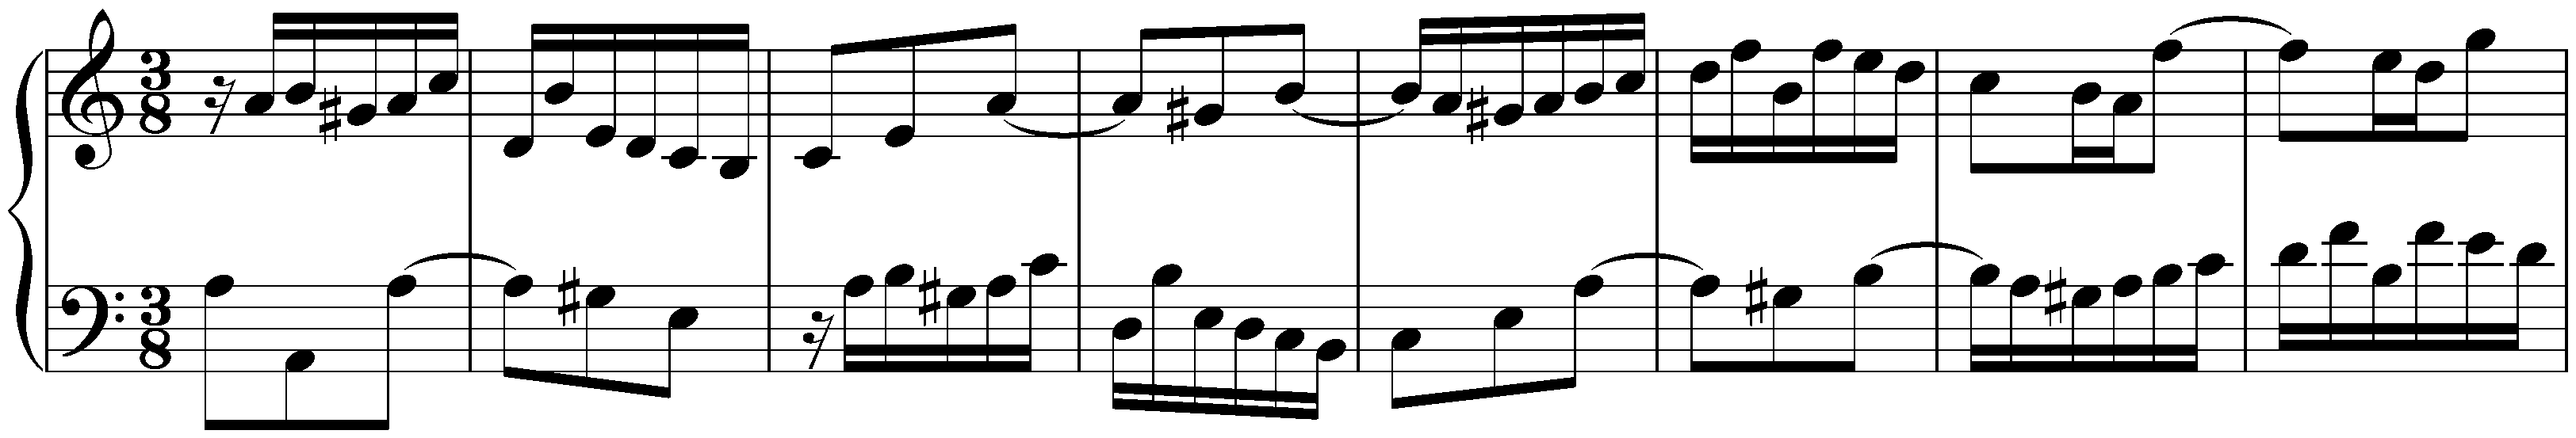 Partita no. 3 in A minor, BWV 827; 1. Fantasia